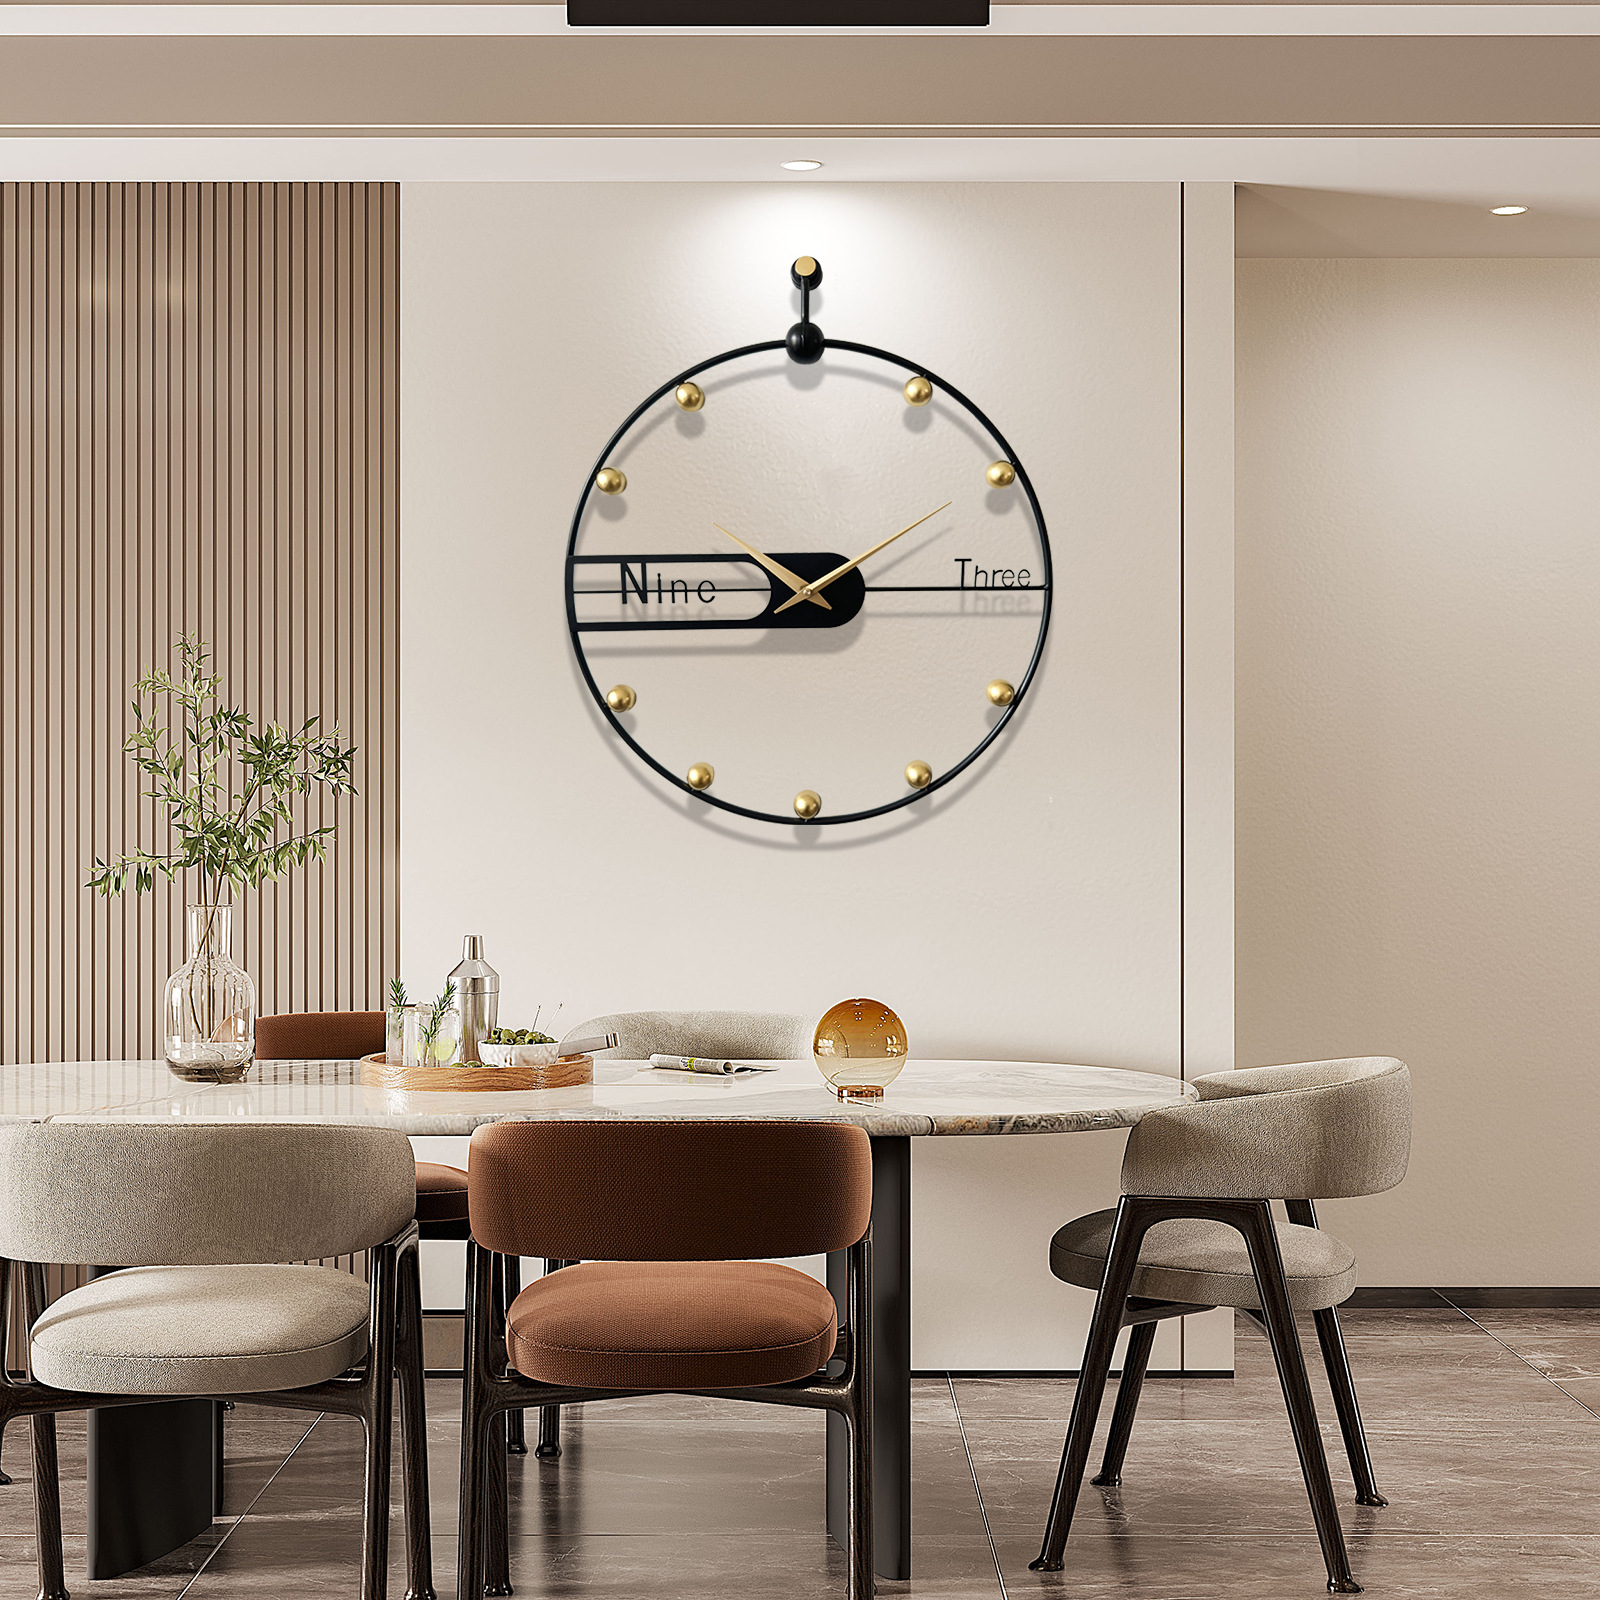 客厅挂钟现代简约 个性创意极简家时钟 时尚挂墙大气装饰轻奢钟表